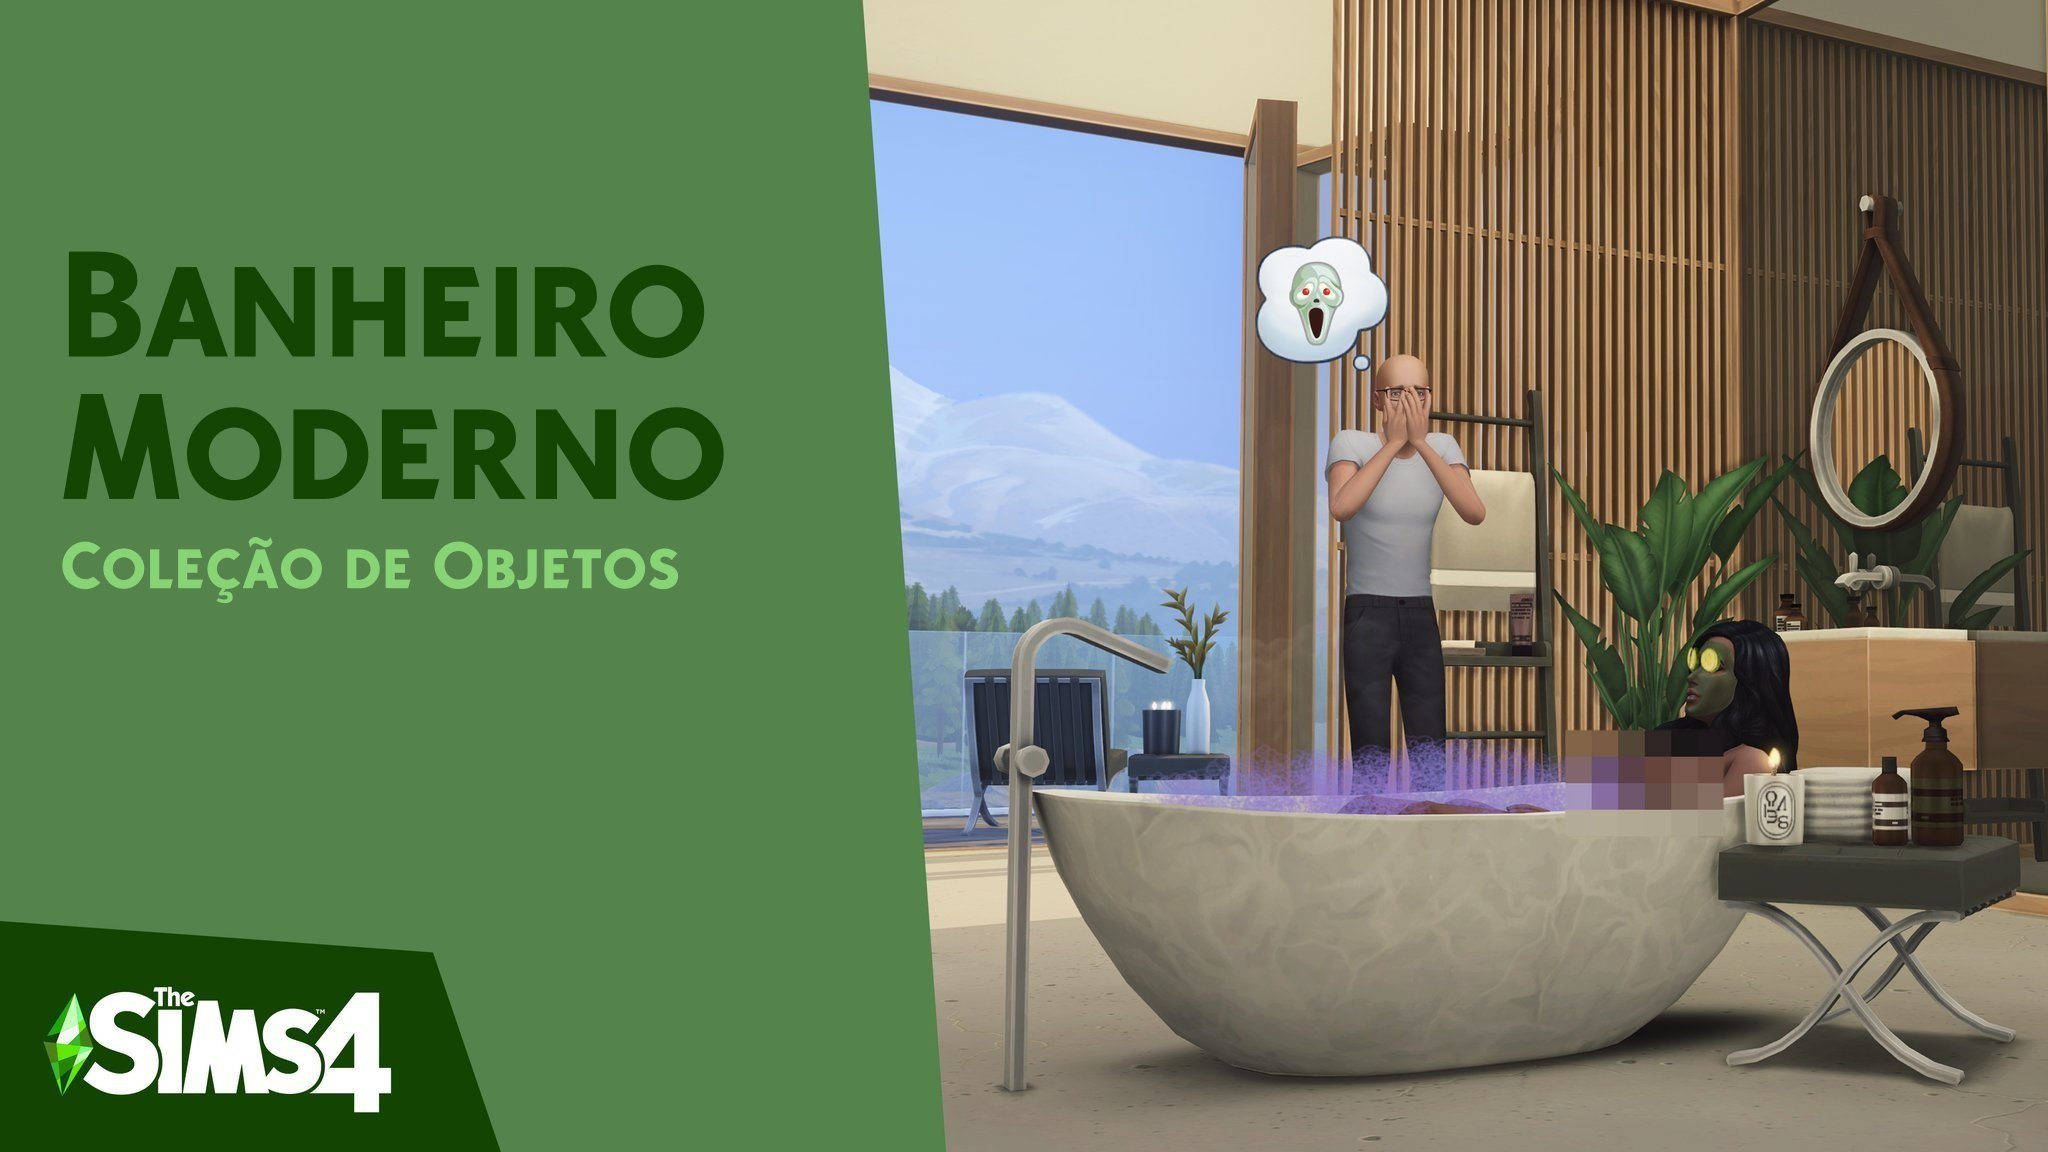 The Sims 4 Banheiro Moderno Coleção de Objetos Disponível Gratuitamente para Download